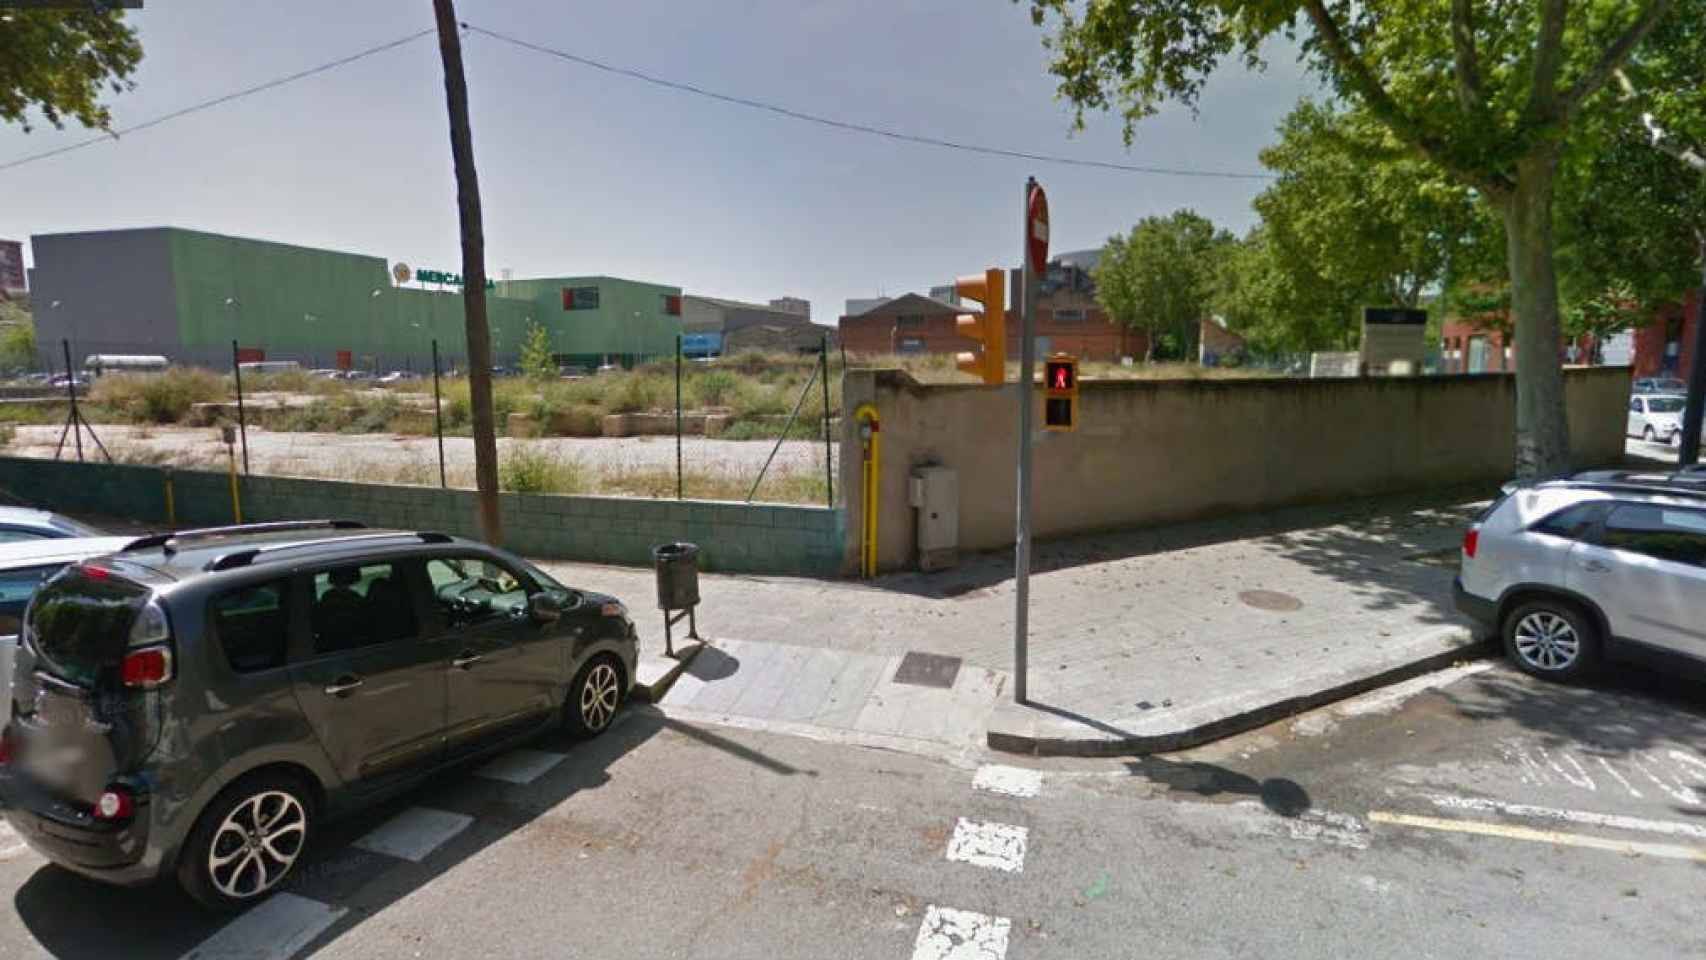 Terrenos donde se construye una gasolinera en el barrio del Maresme / Google Maps